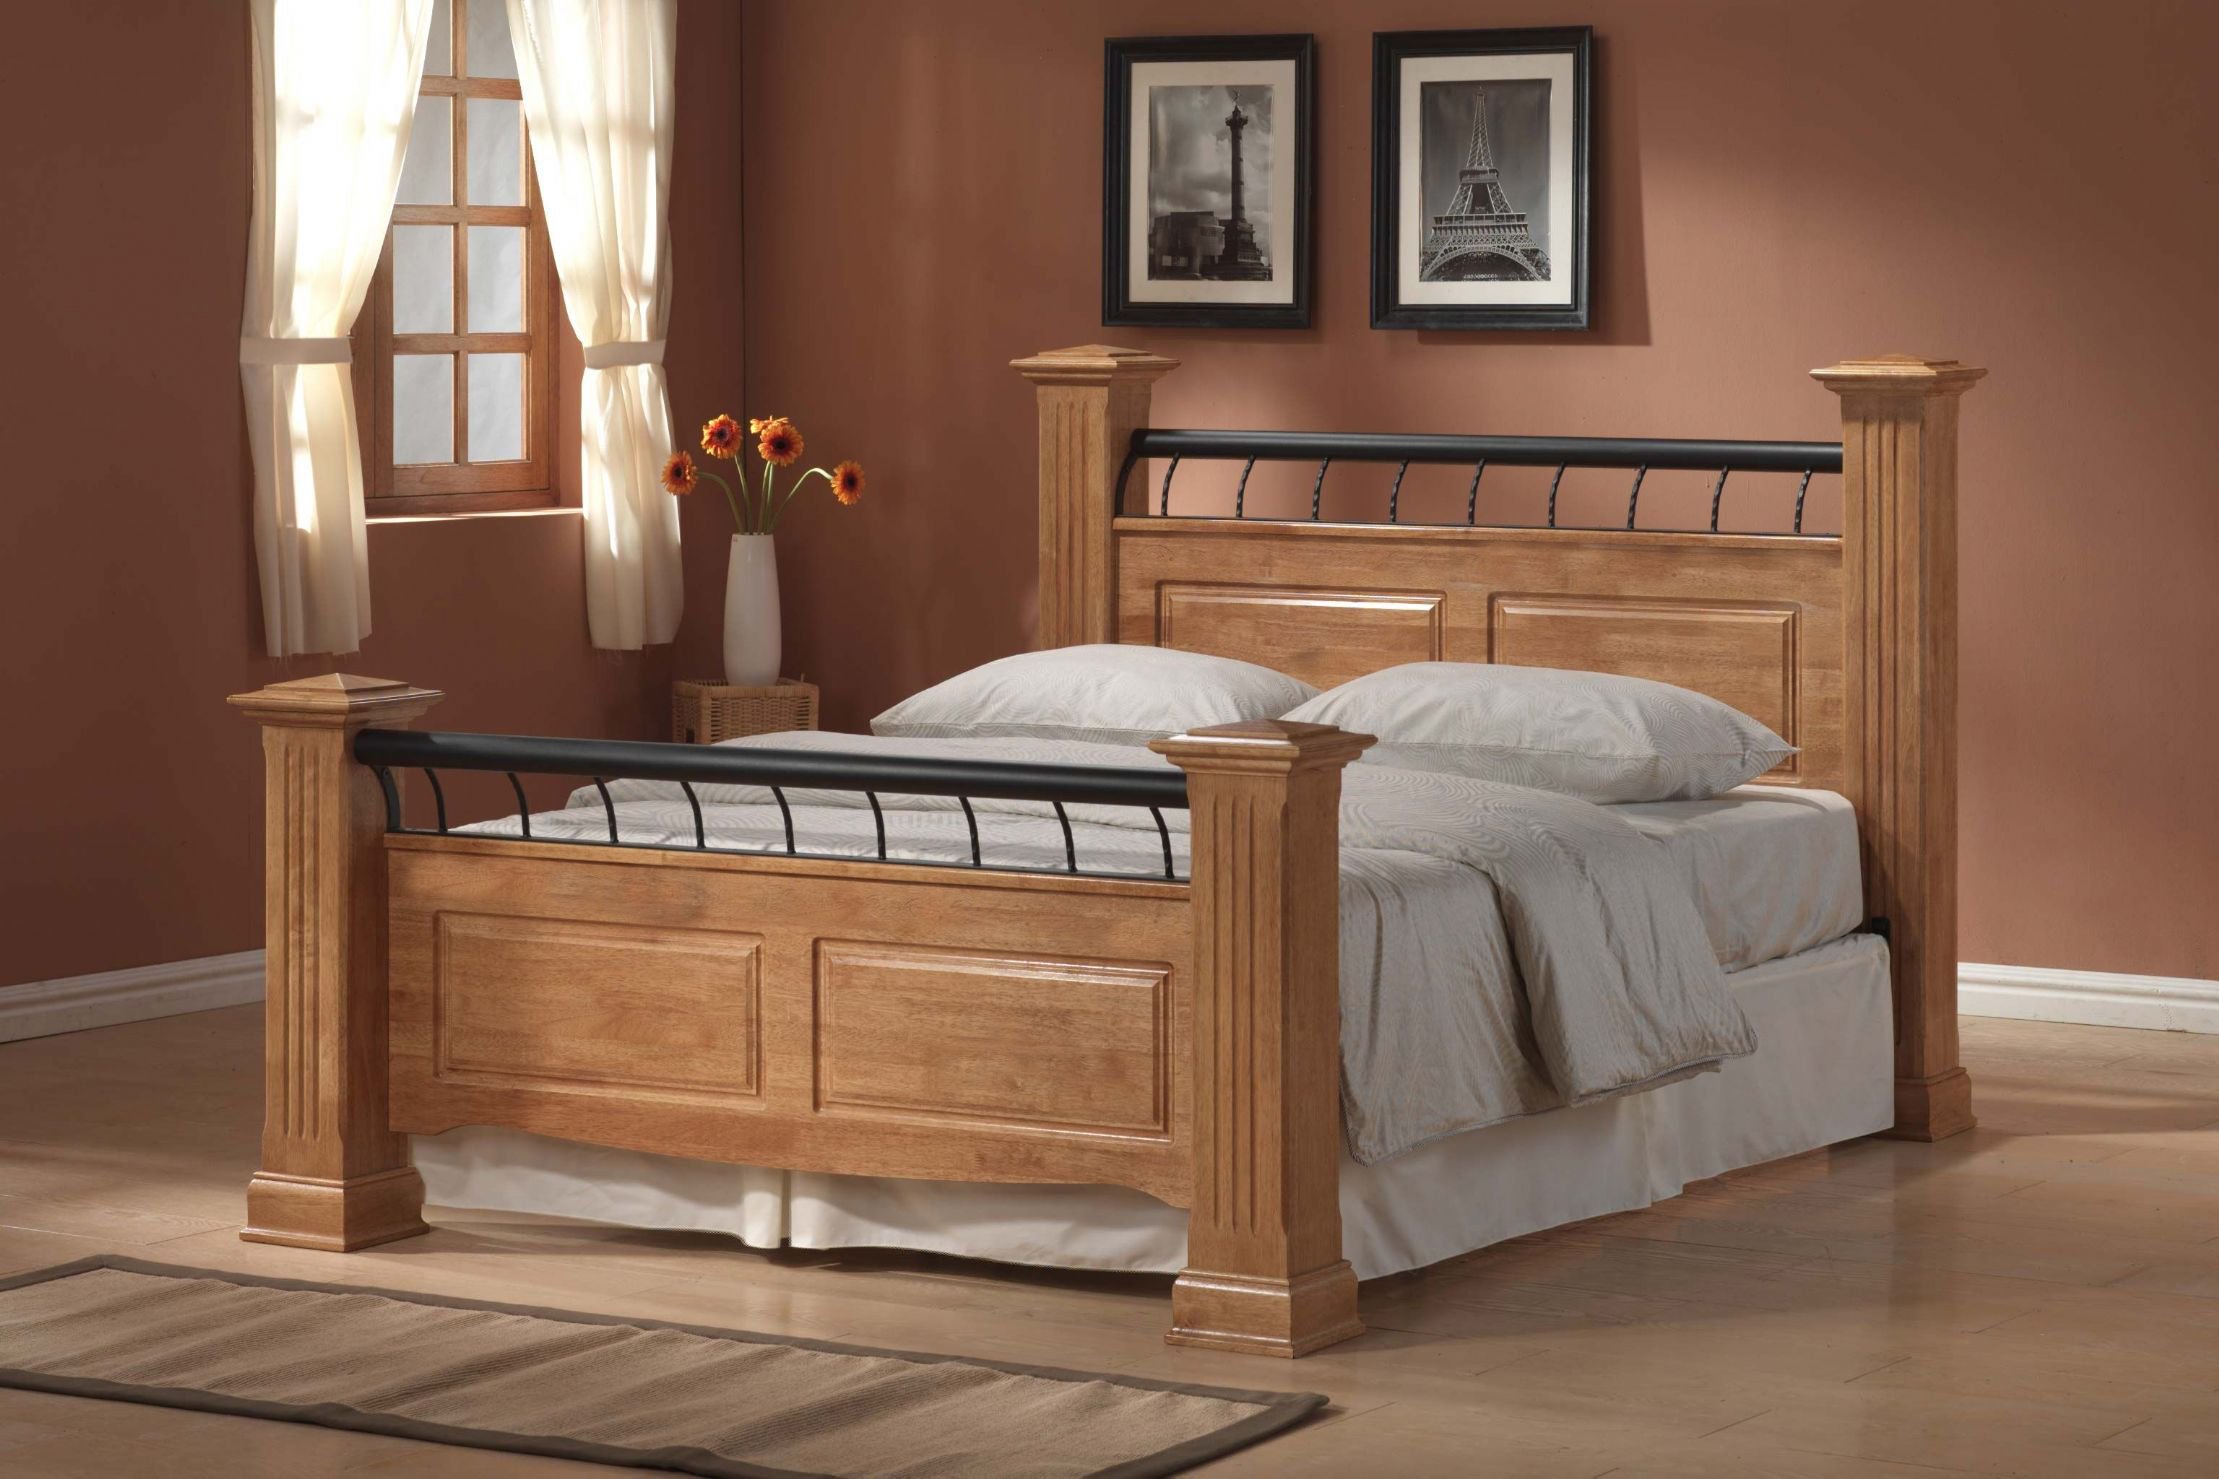 Wooden мебель. Кровати Кинг сайз из массива. Кровать Кинг сайз дерево. Кровать подростковая «Wooden Bed-2». Дабл Кинг сайз.